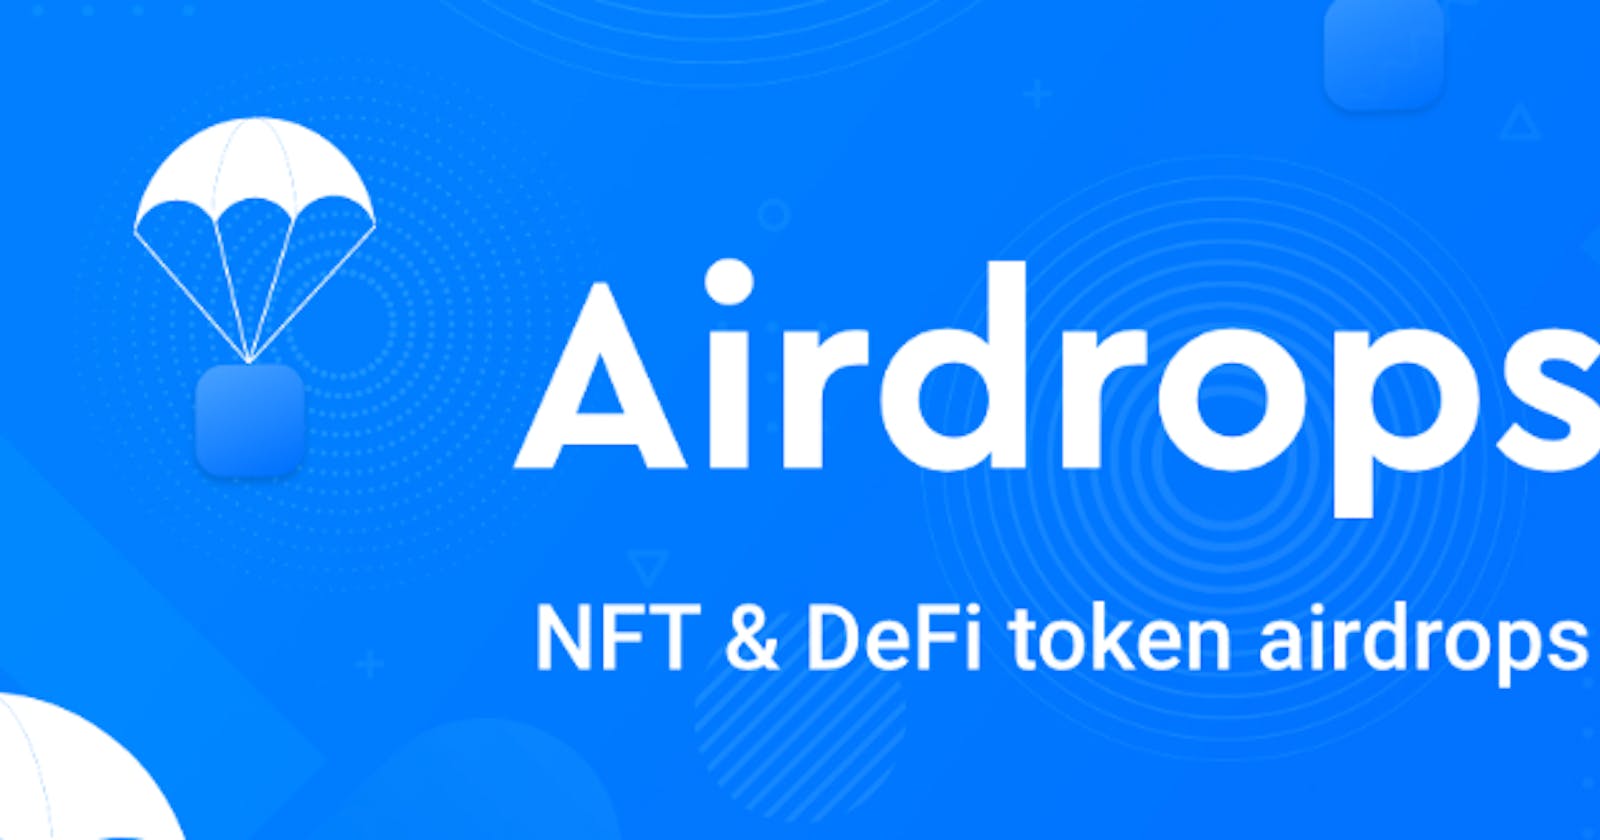 Build an airdrop NFT app